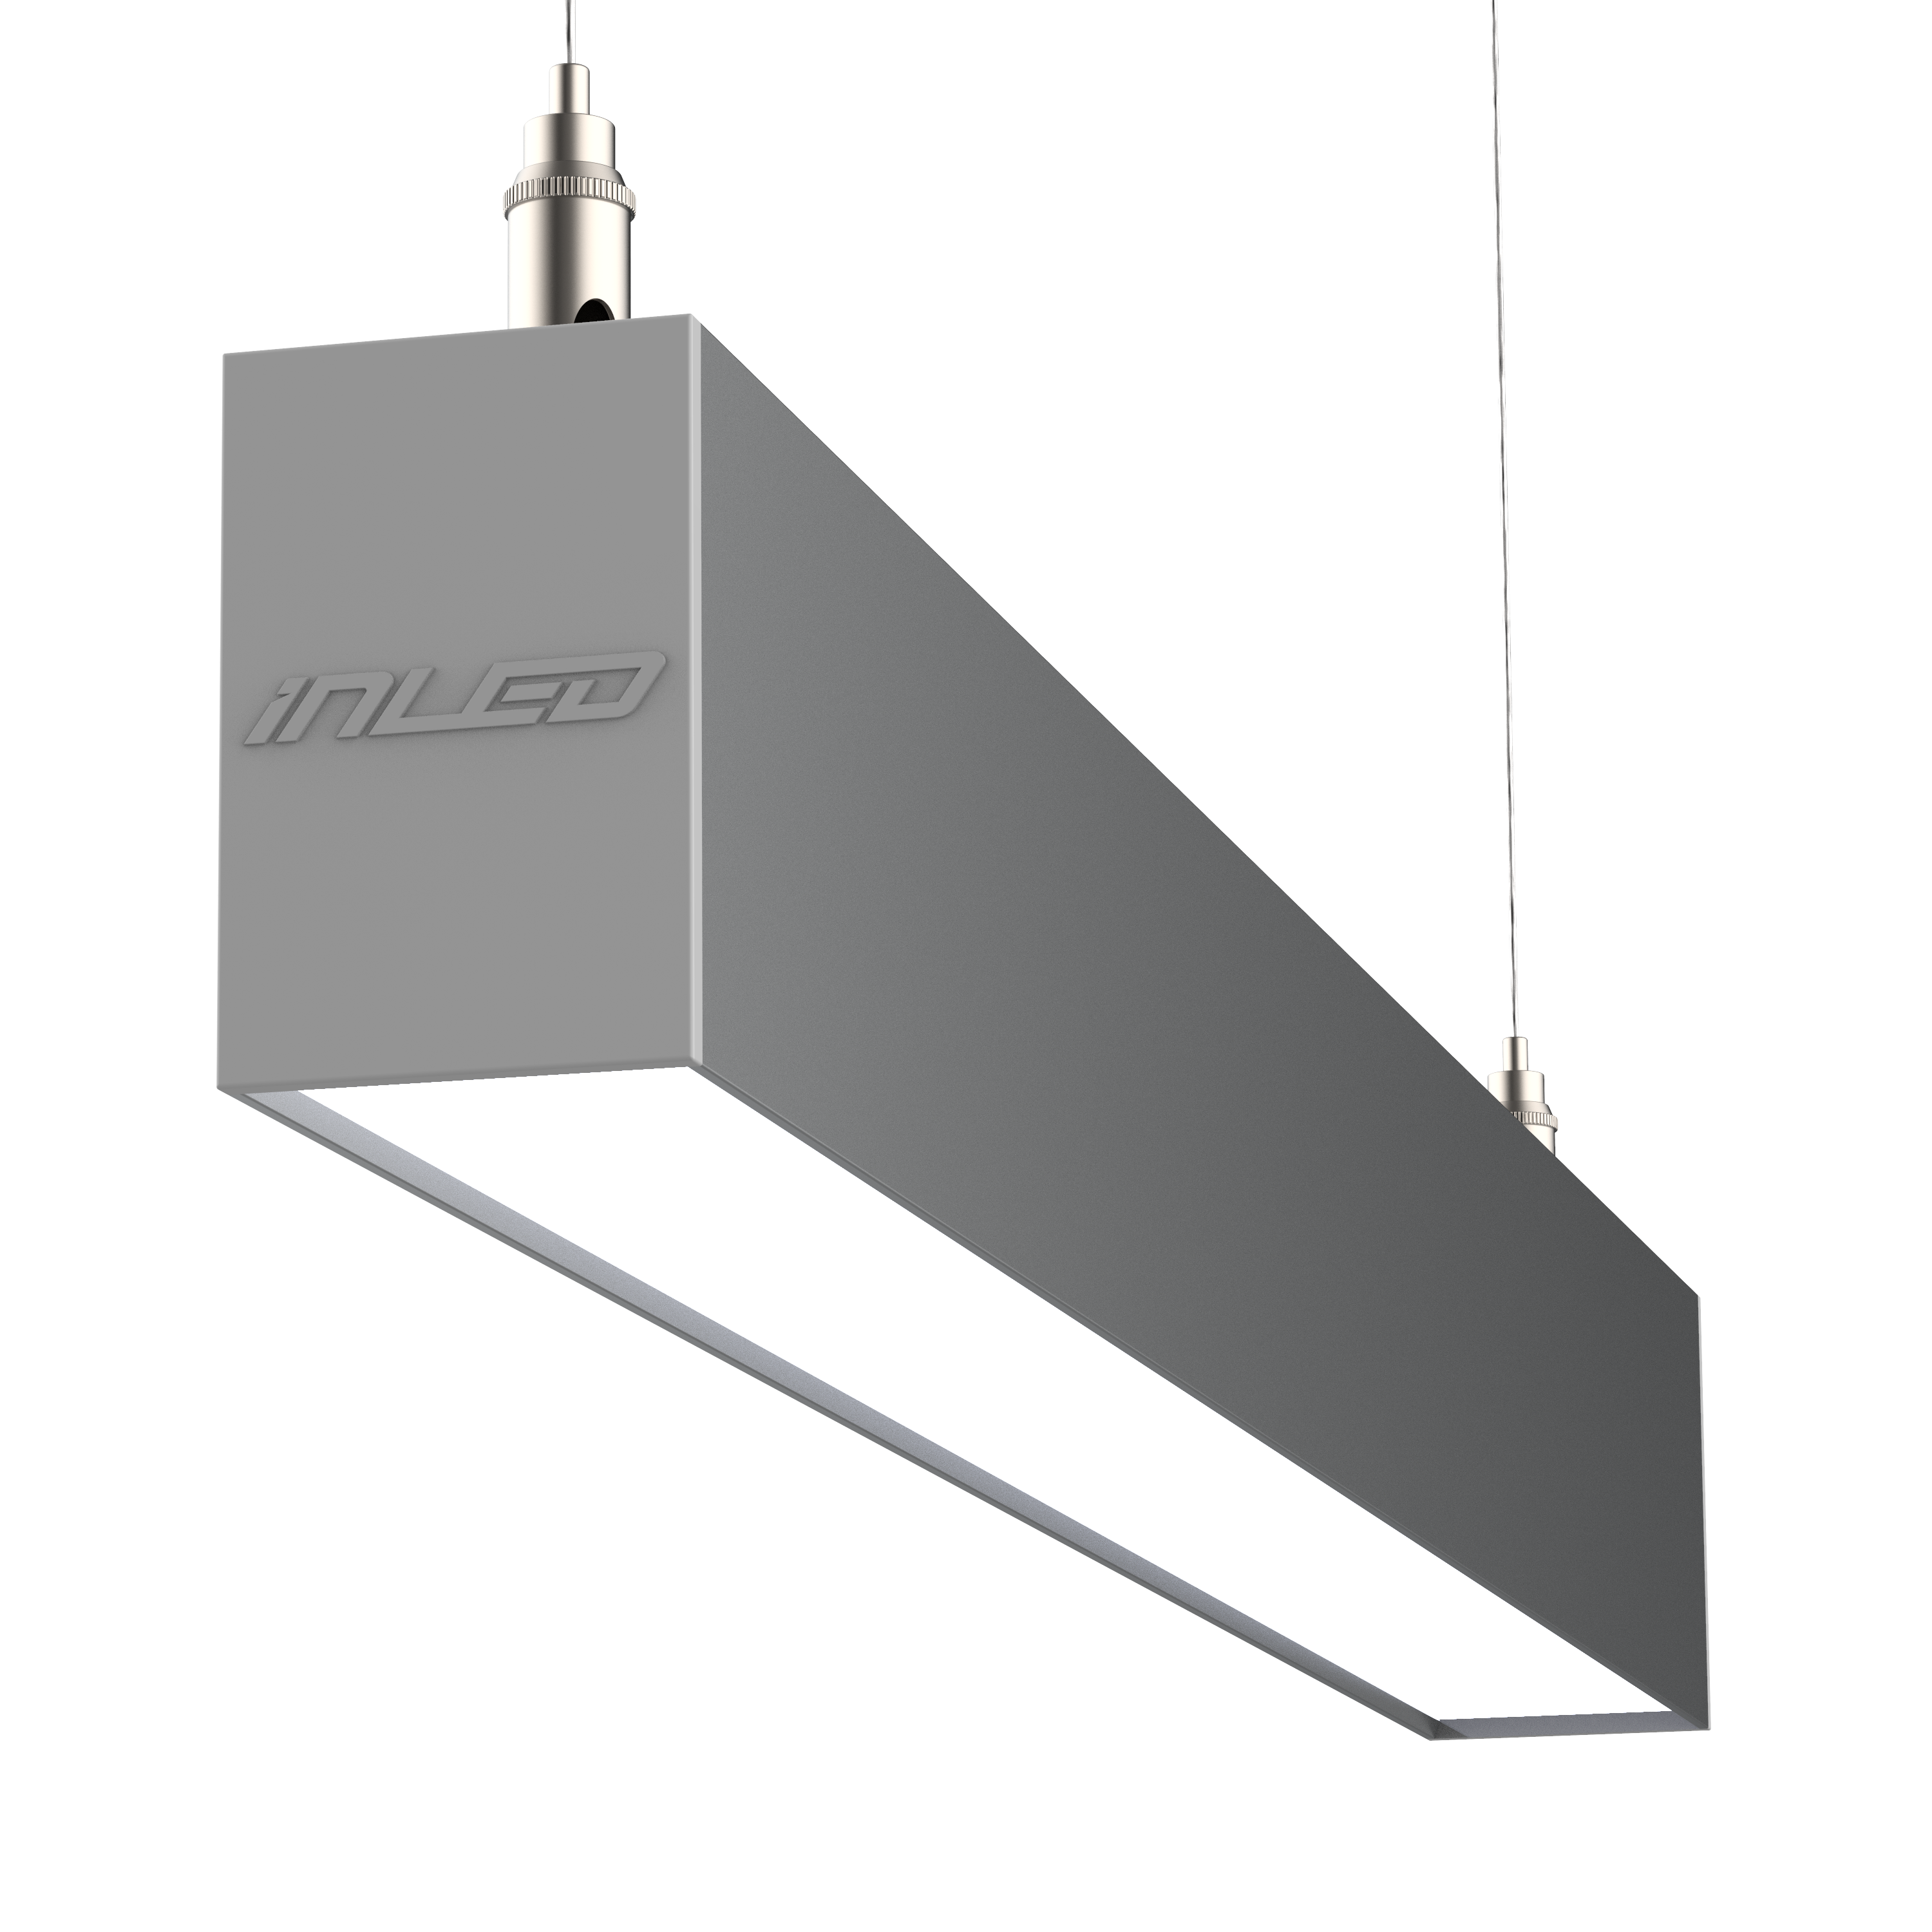 Inled – украинский производитель светодиодного освещения